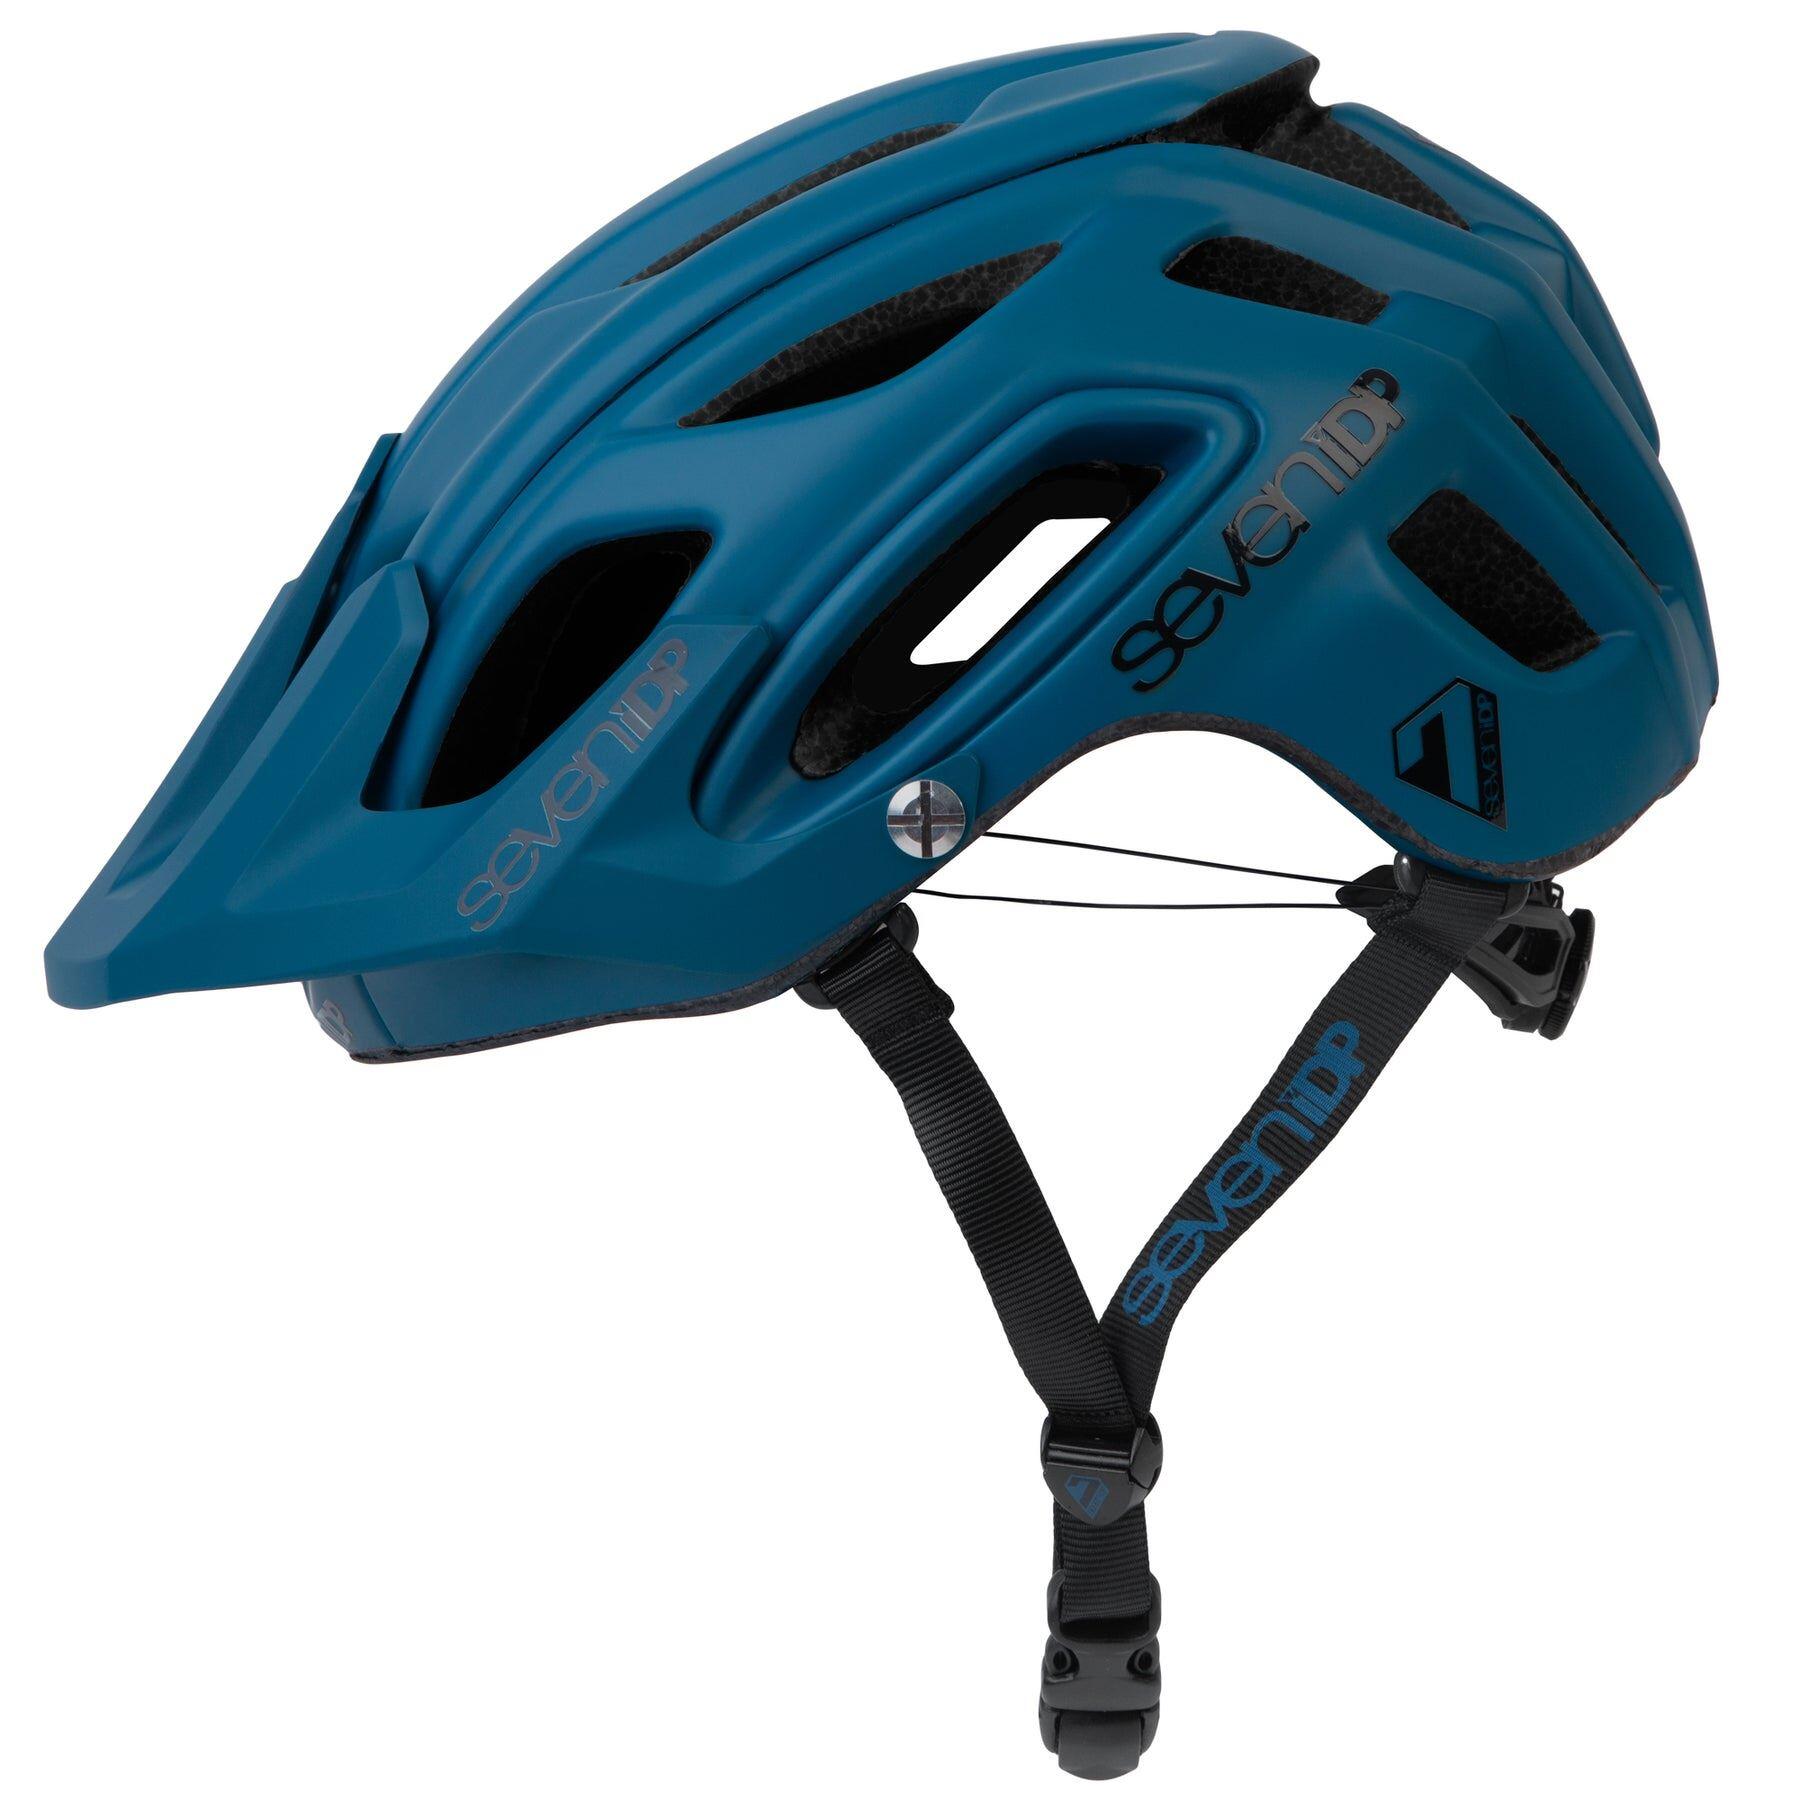 7iDP M2 BOA Helmet Diesel Blue - M/L 56-59cm 1/2